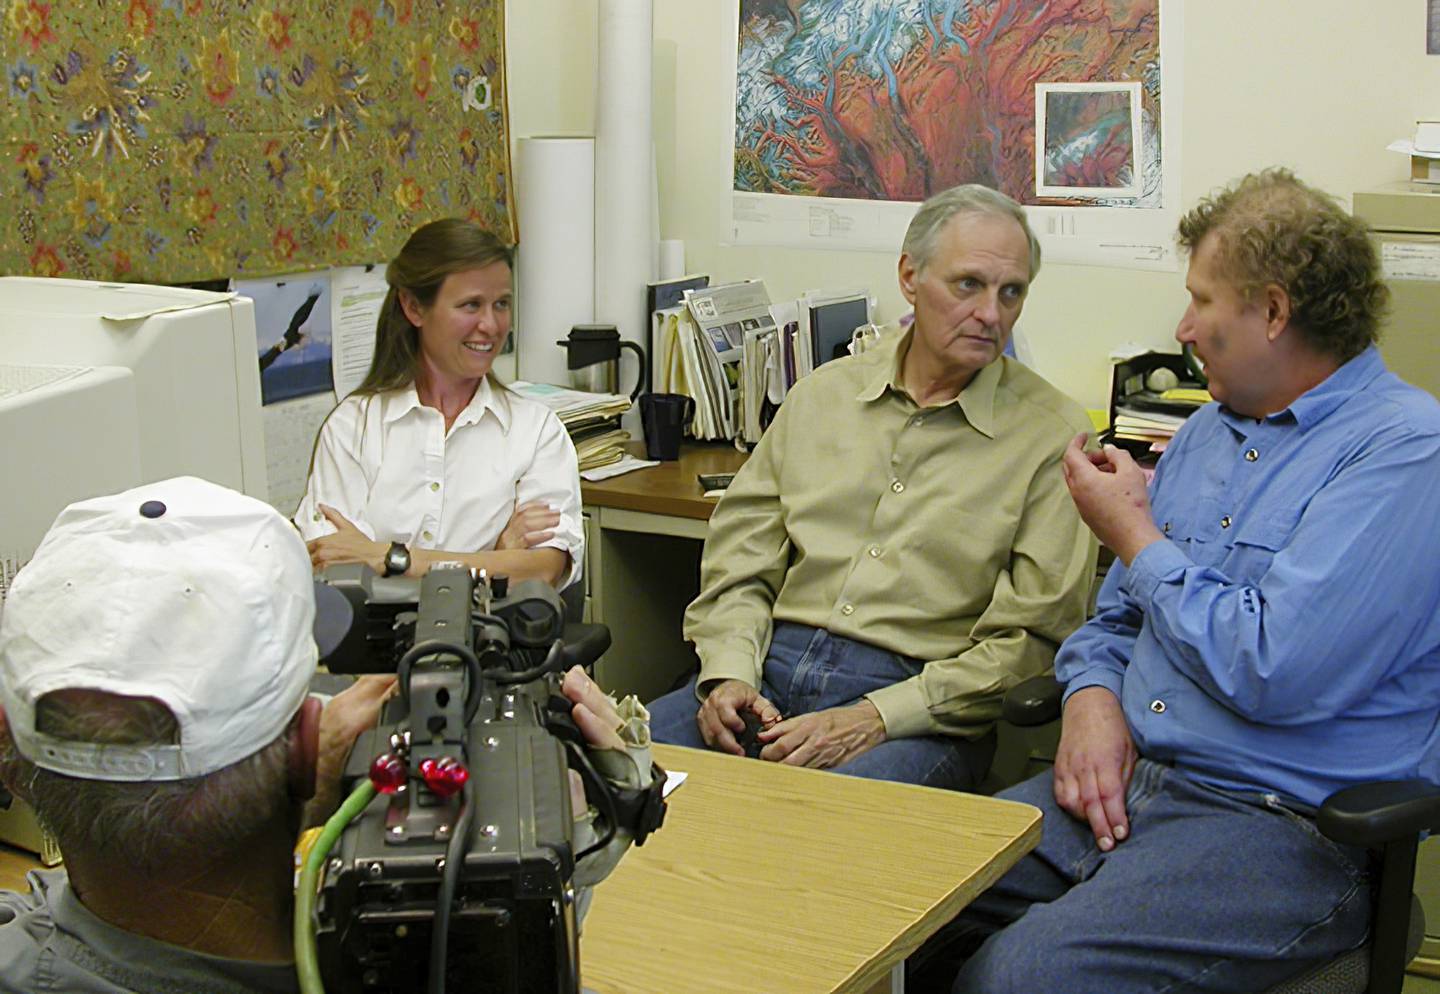 Alan Alda, center, was host of PBS’s “Scientific American Frontiers” when he visited Alaska in 2004